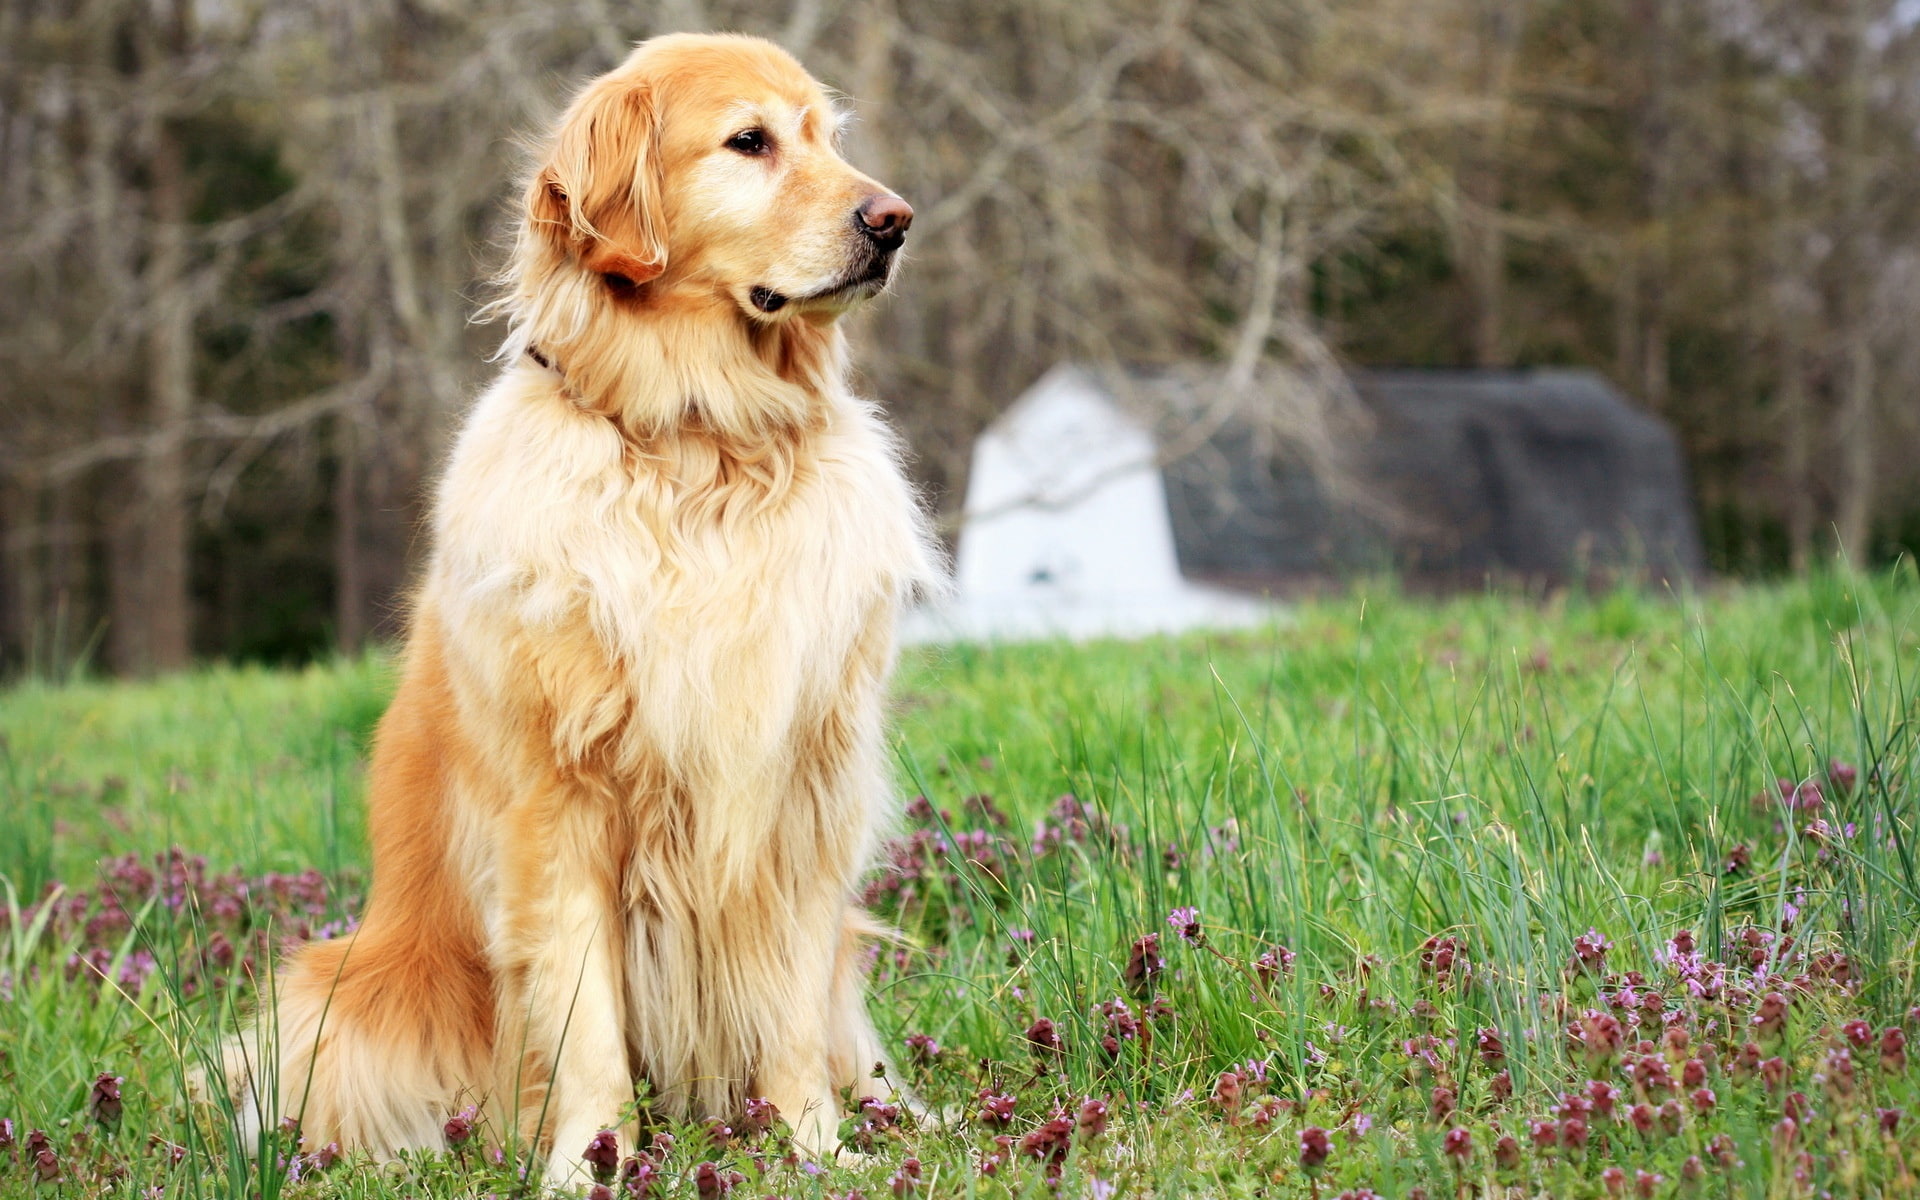 Dog standing in the grass, golden retriever